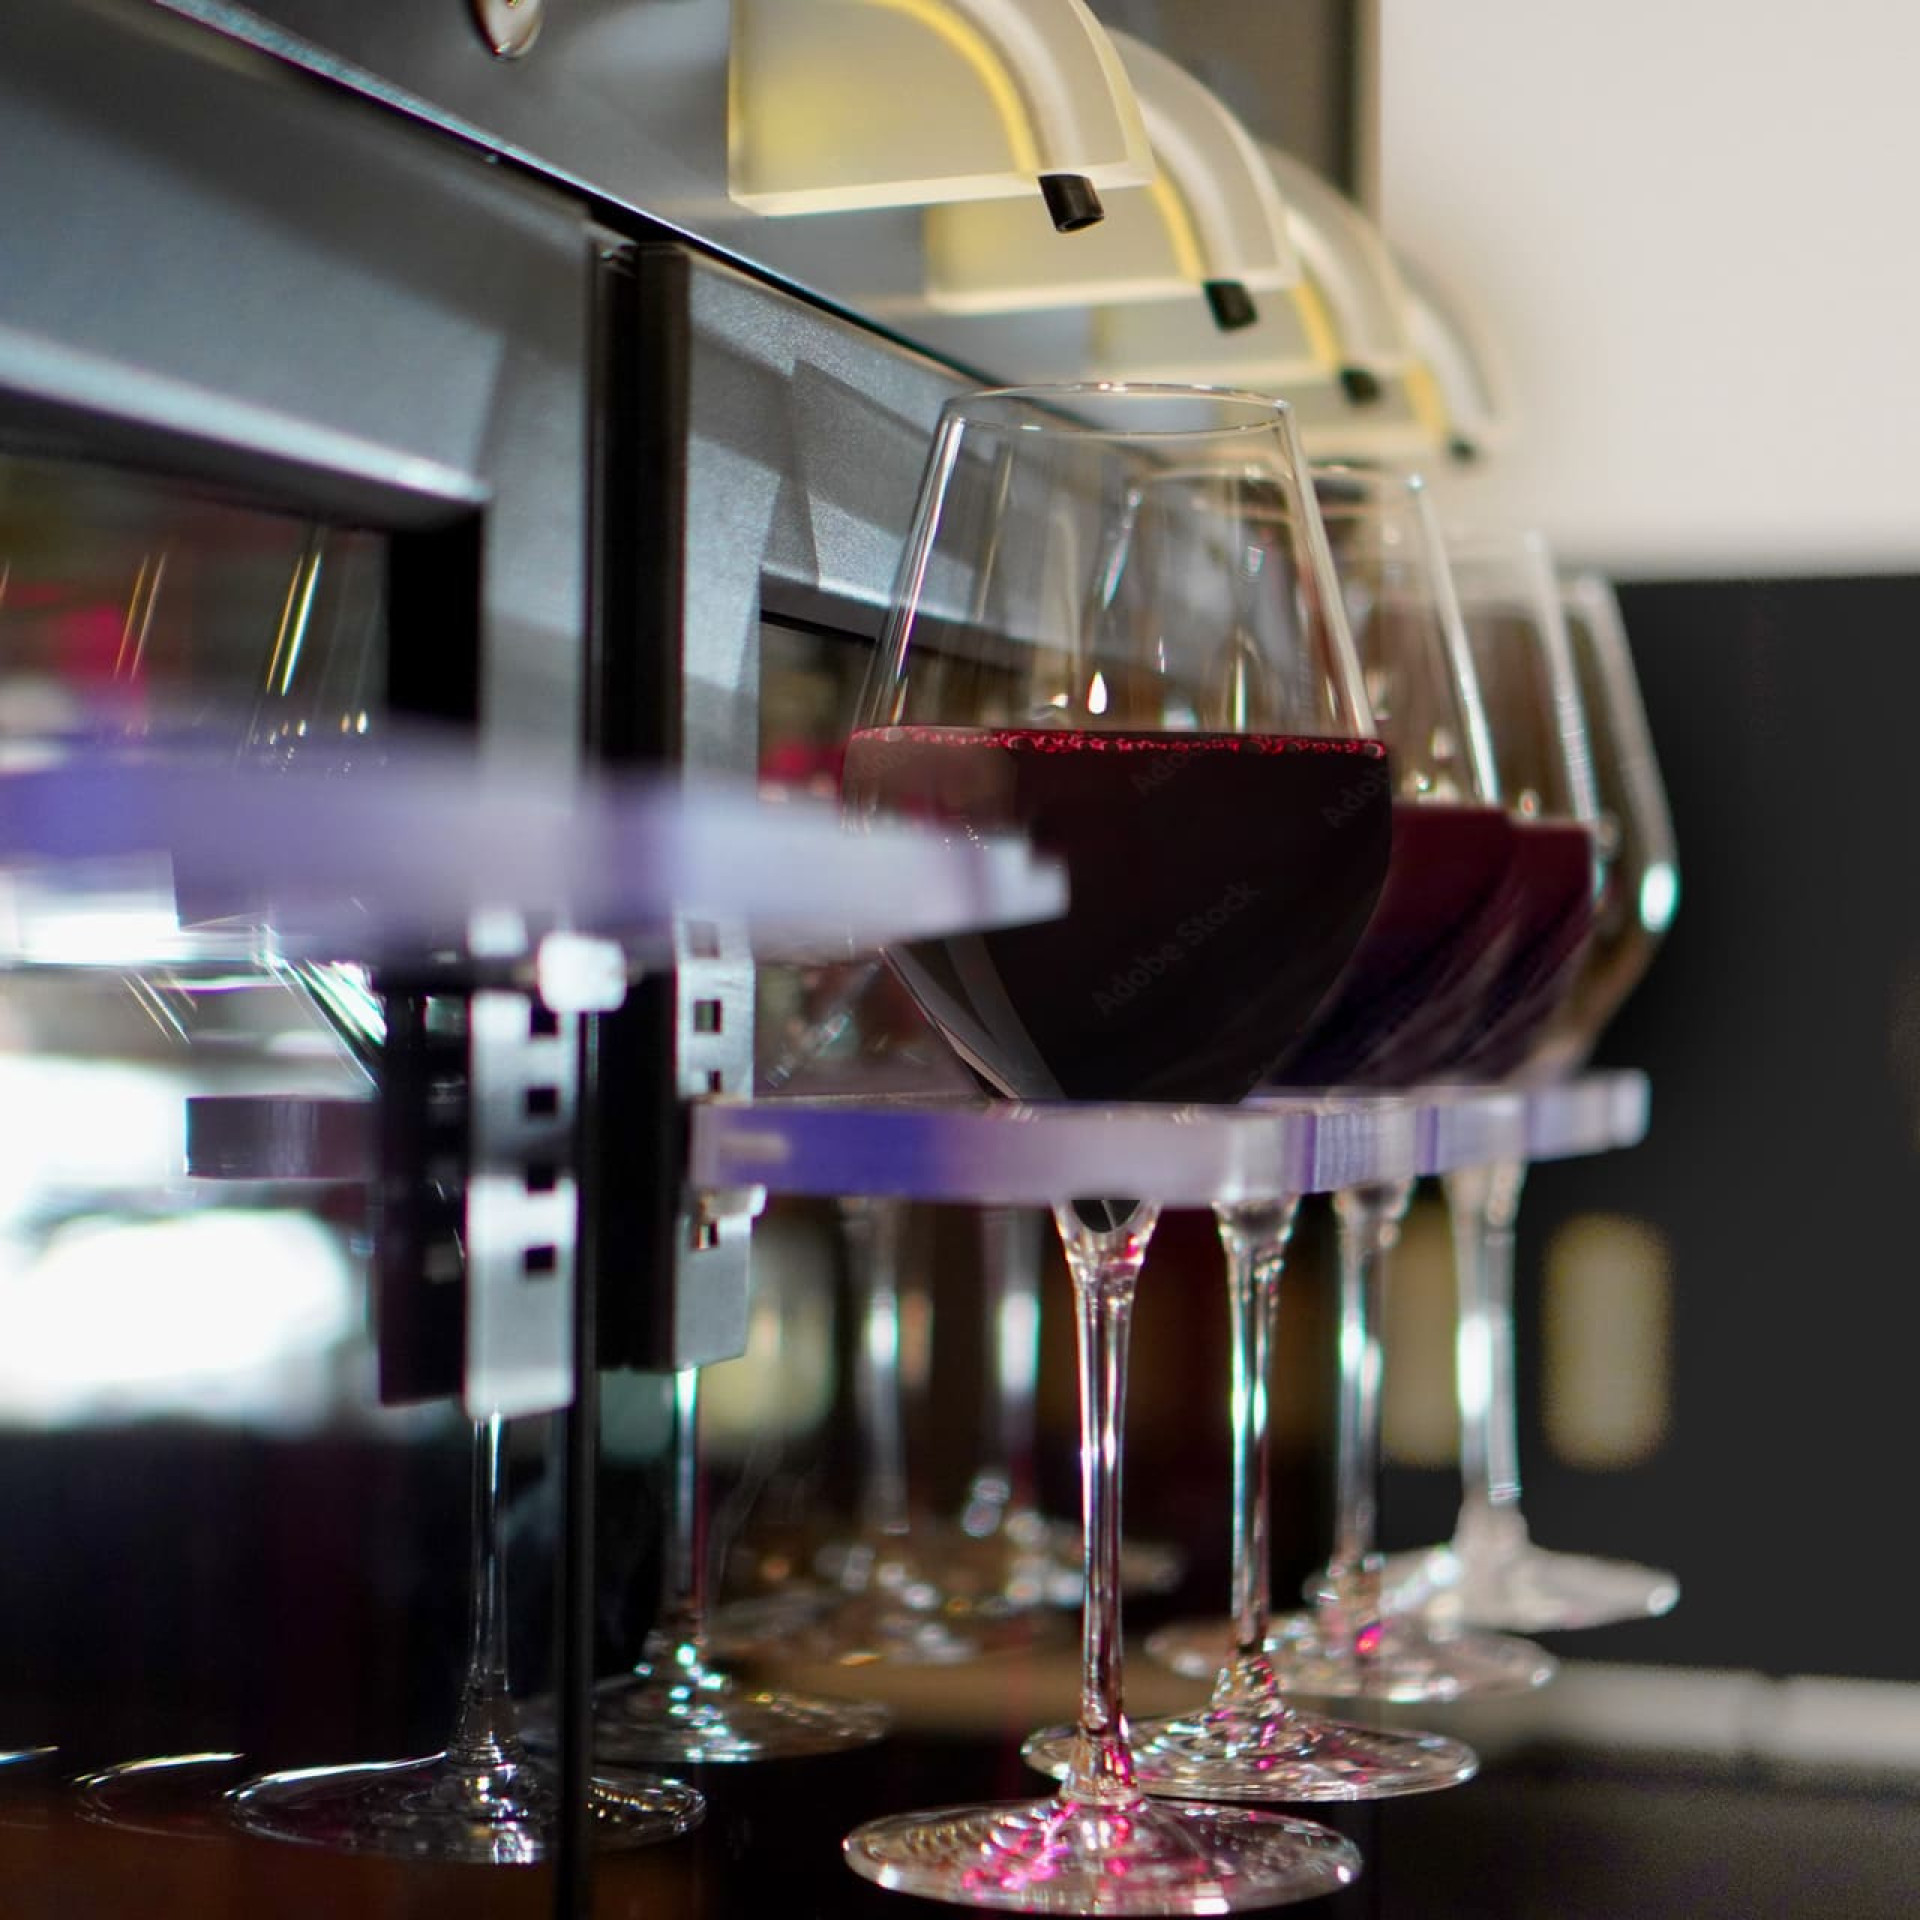 La machine de service du vin, un indispensable pour des établissements comme les brasseries avec des volumes de vente de vin importants.